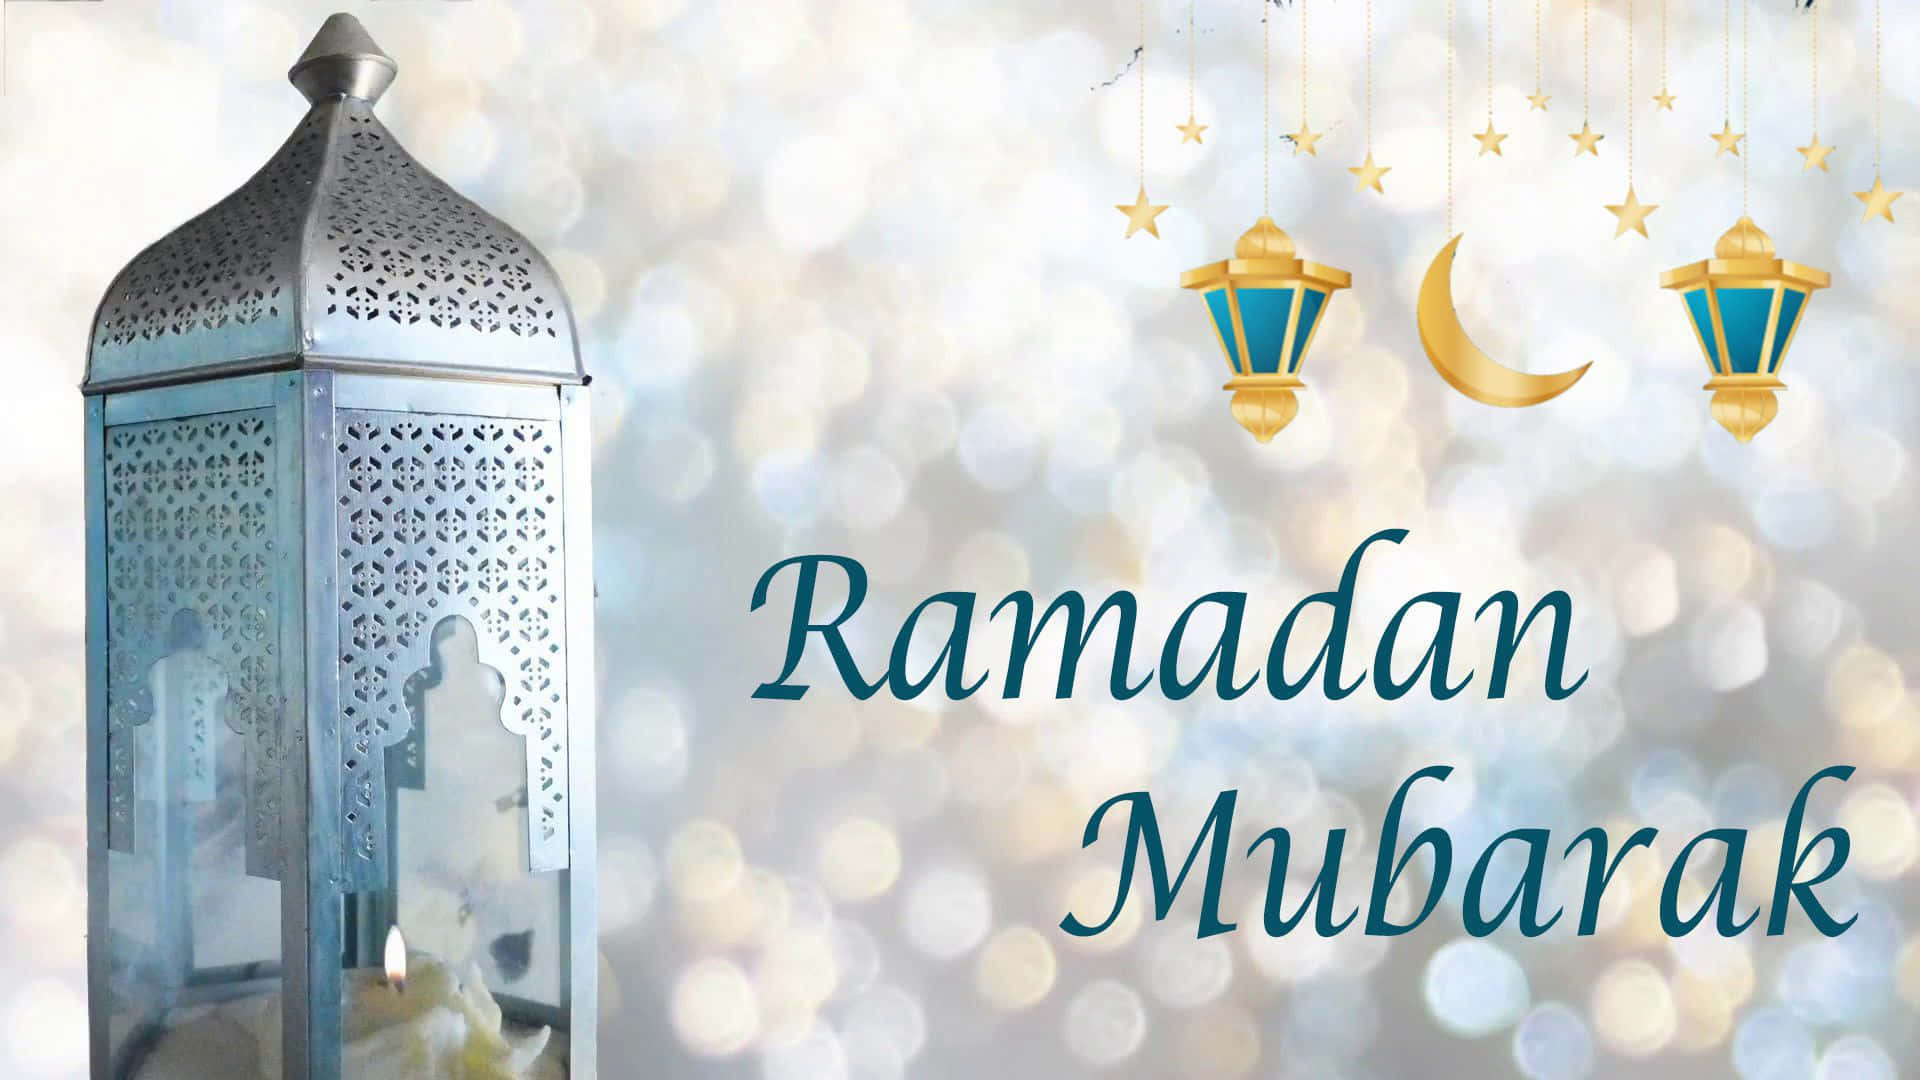 Fondode Pantalla De Ramadan Mubarak.